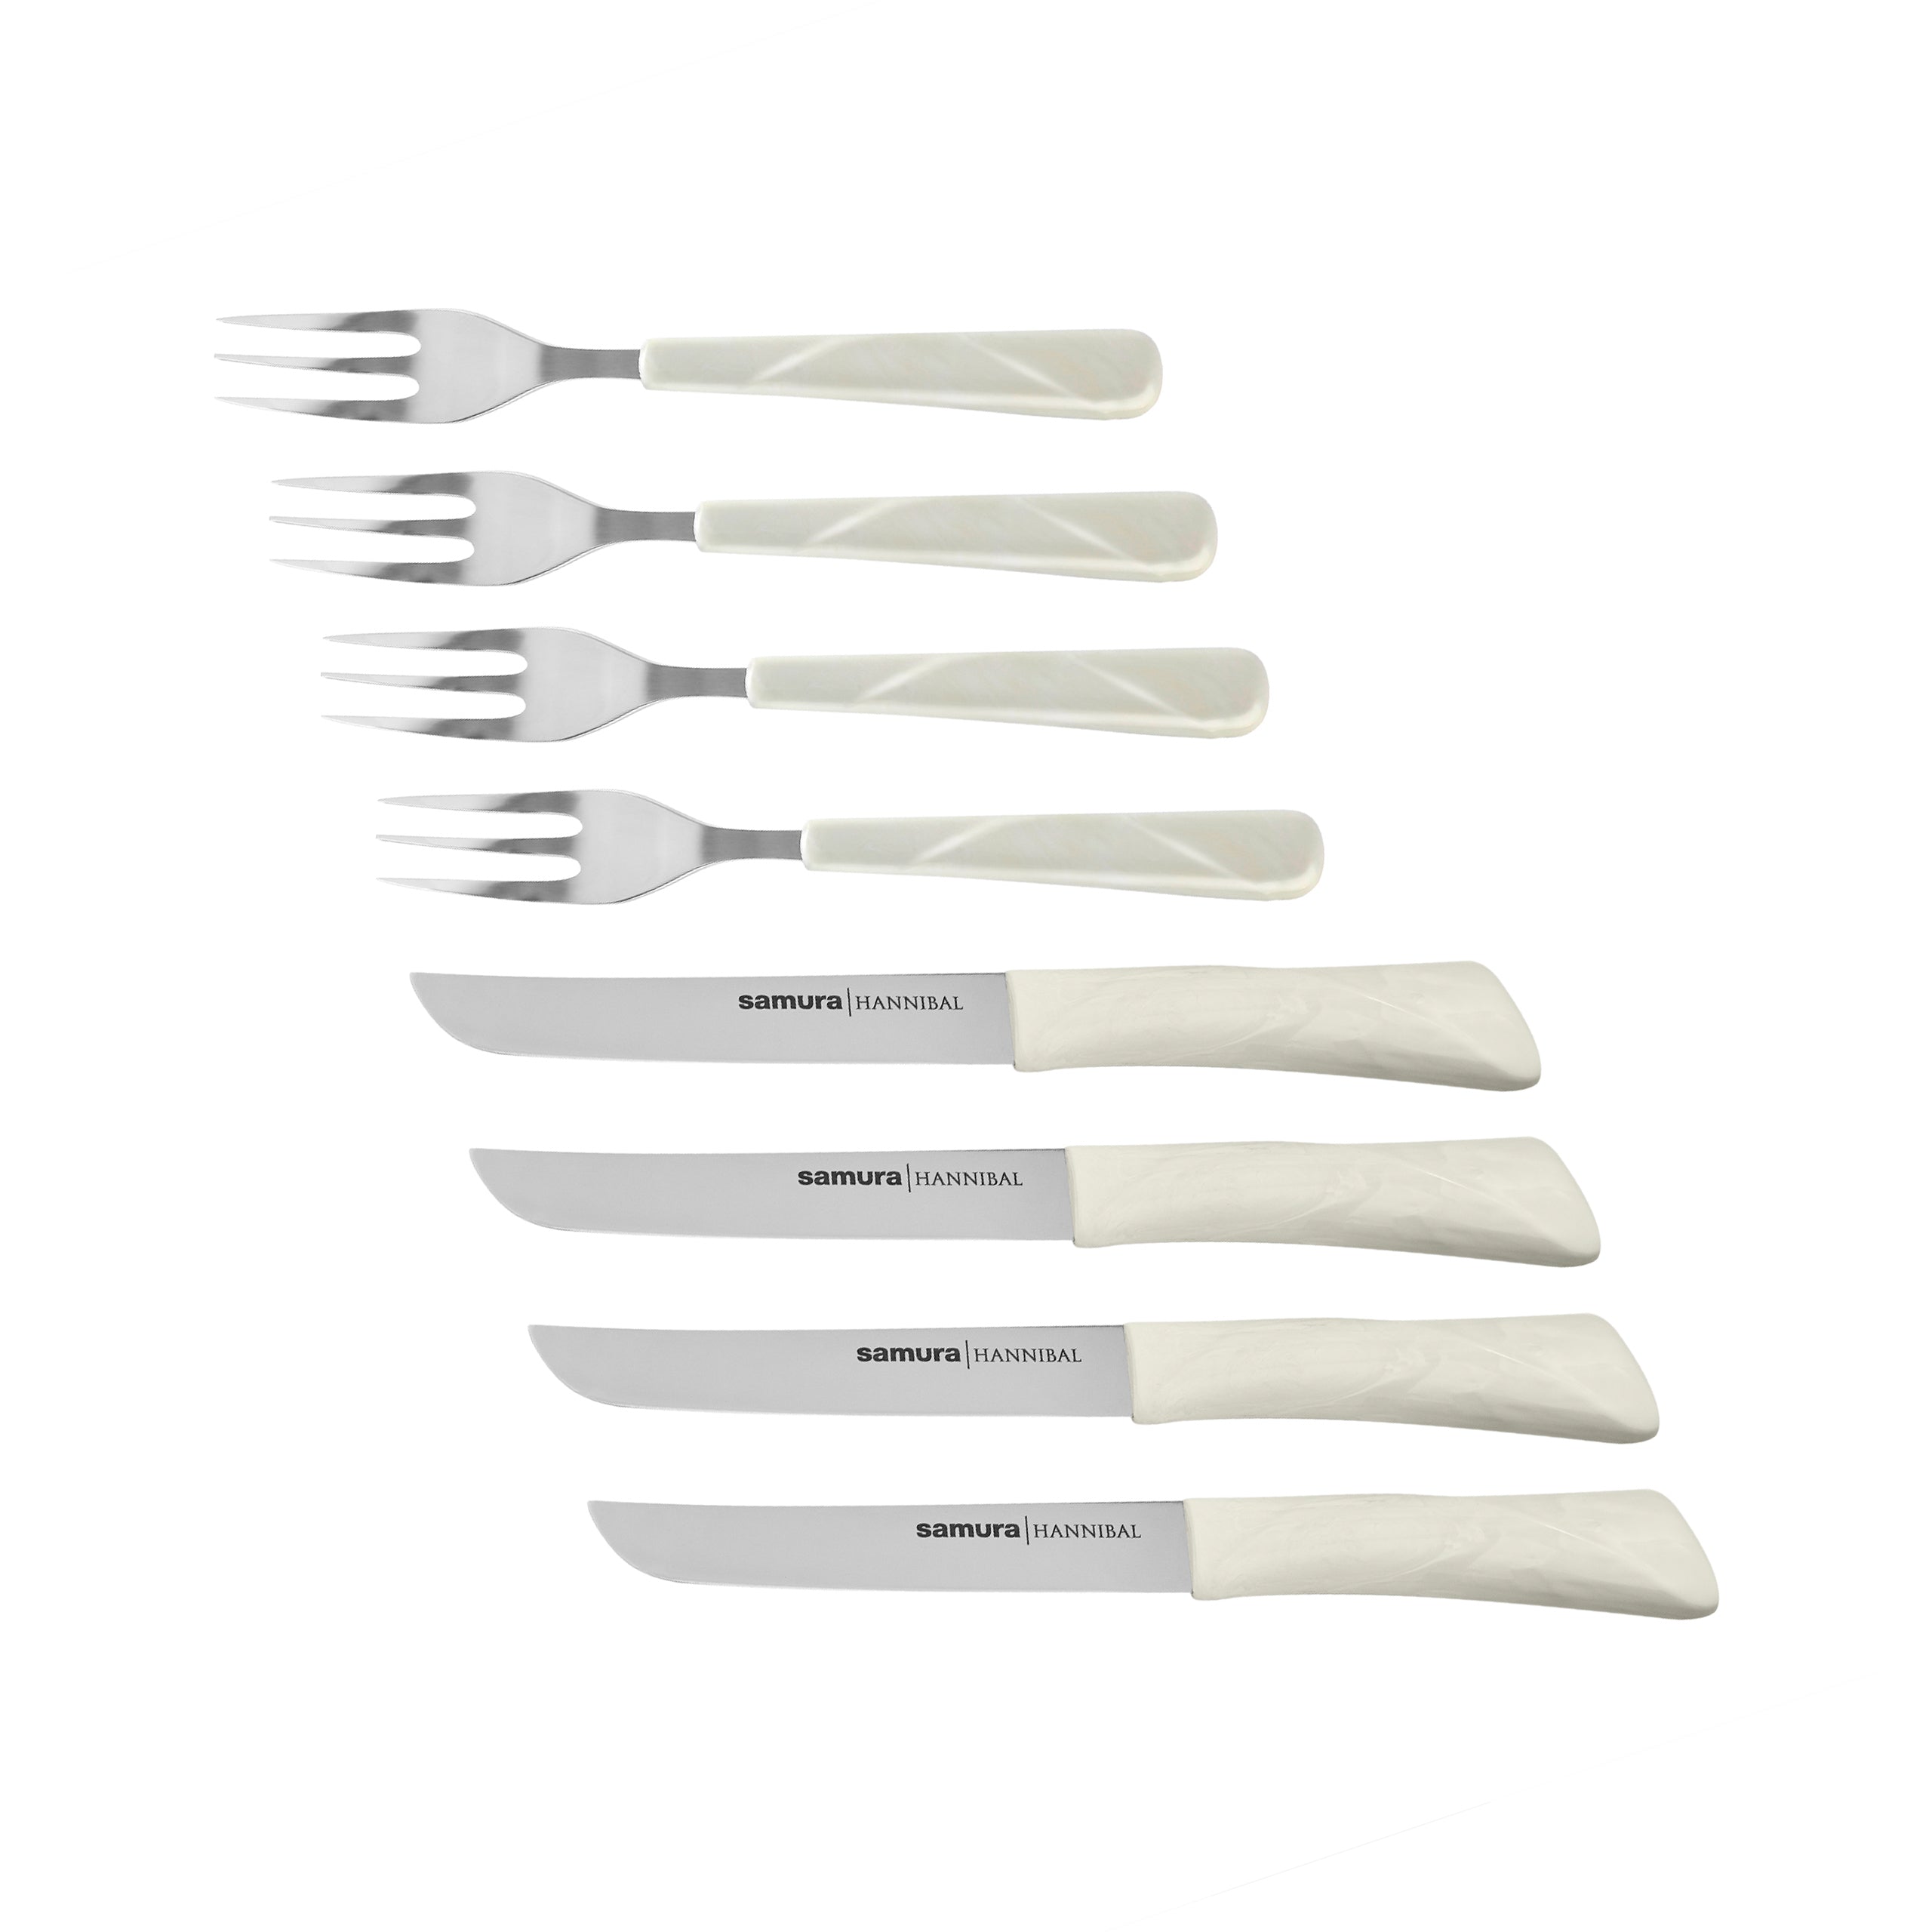 Samura HANNIBAL "Steak knife and fork Set for 4 persons, white handle"